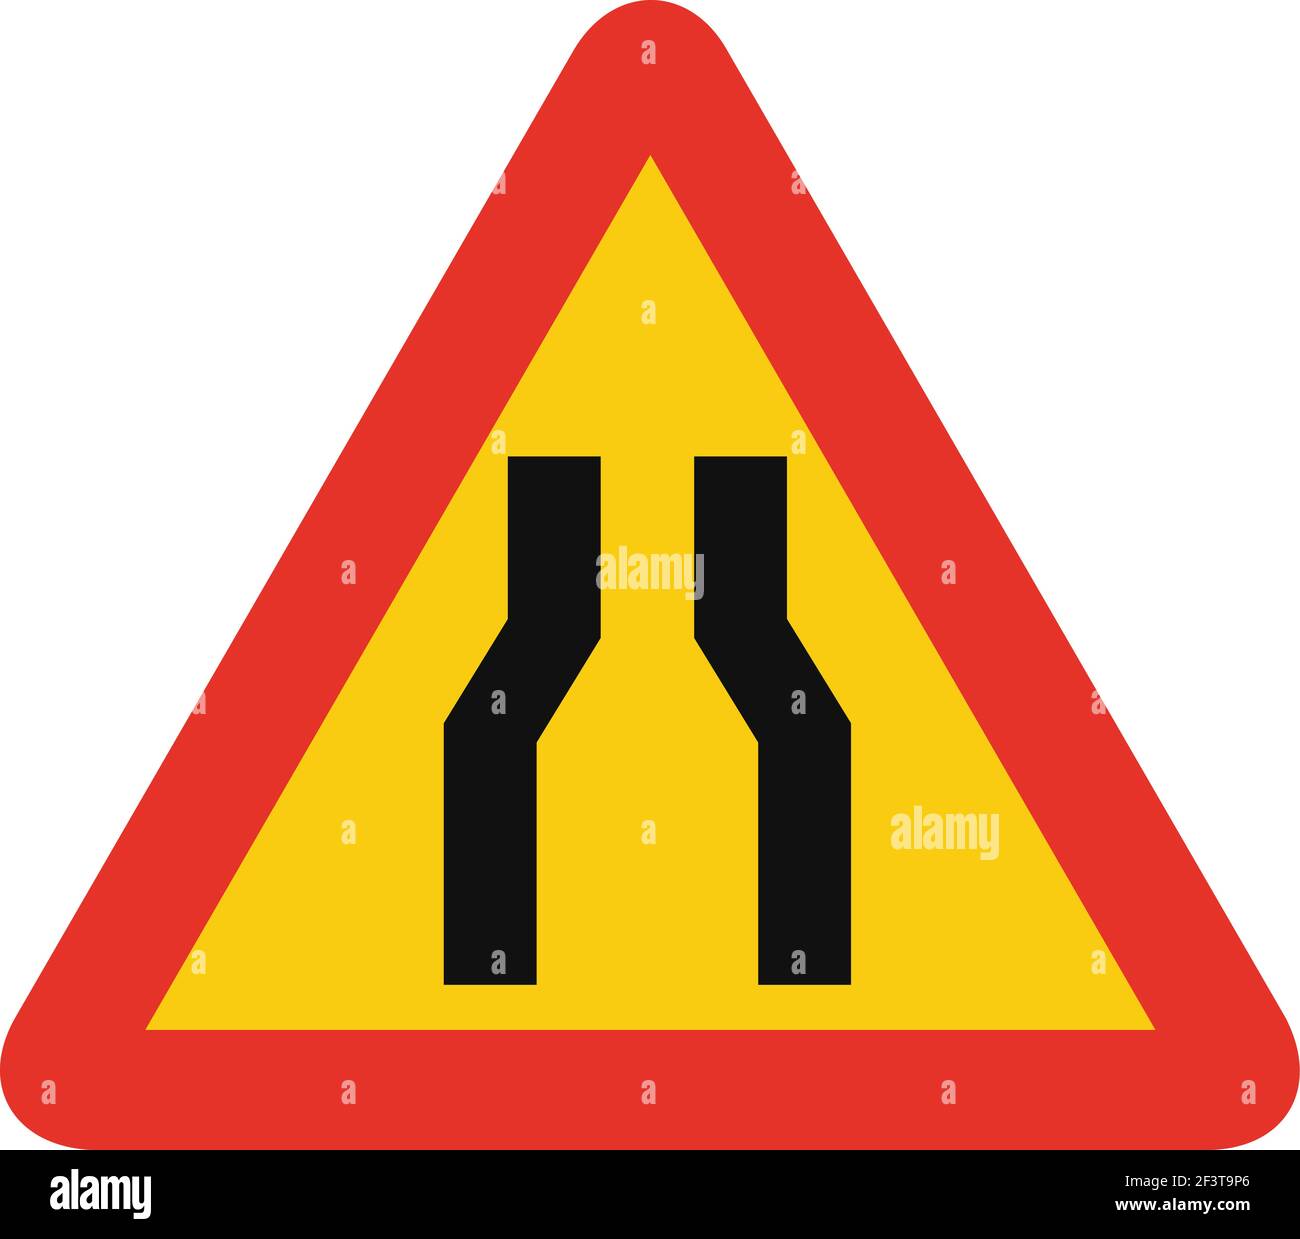 Señal de tráfico triangular en amarillo y rojo, aislada sobre fondo blanco. Aviso temporal de carretera estrecha por delante Ilustración del Vector